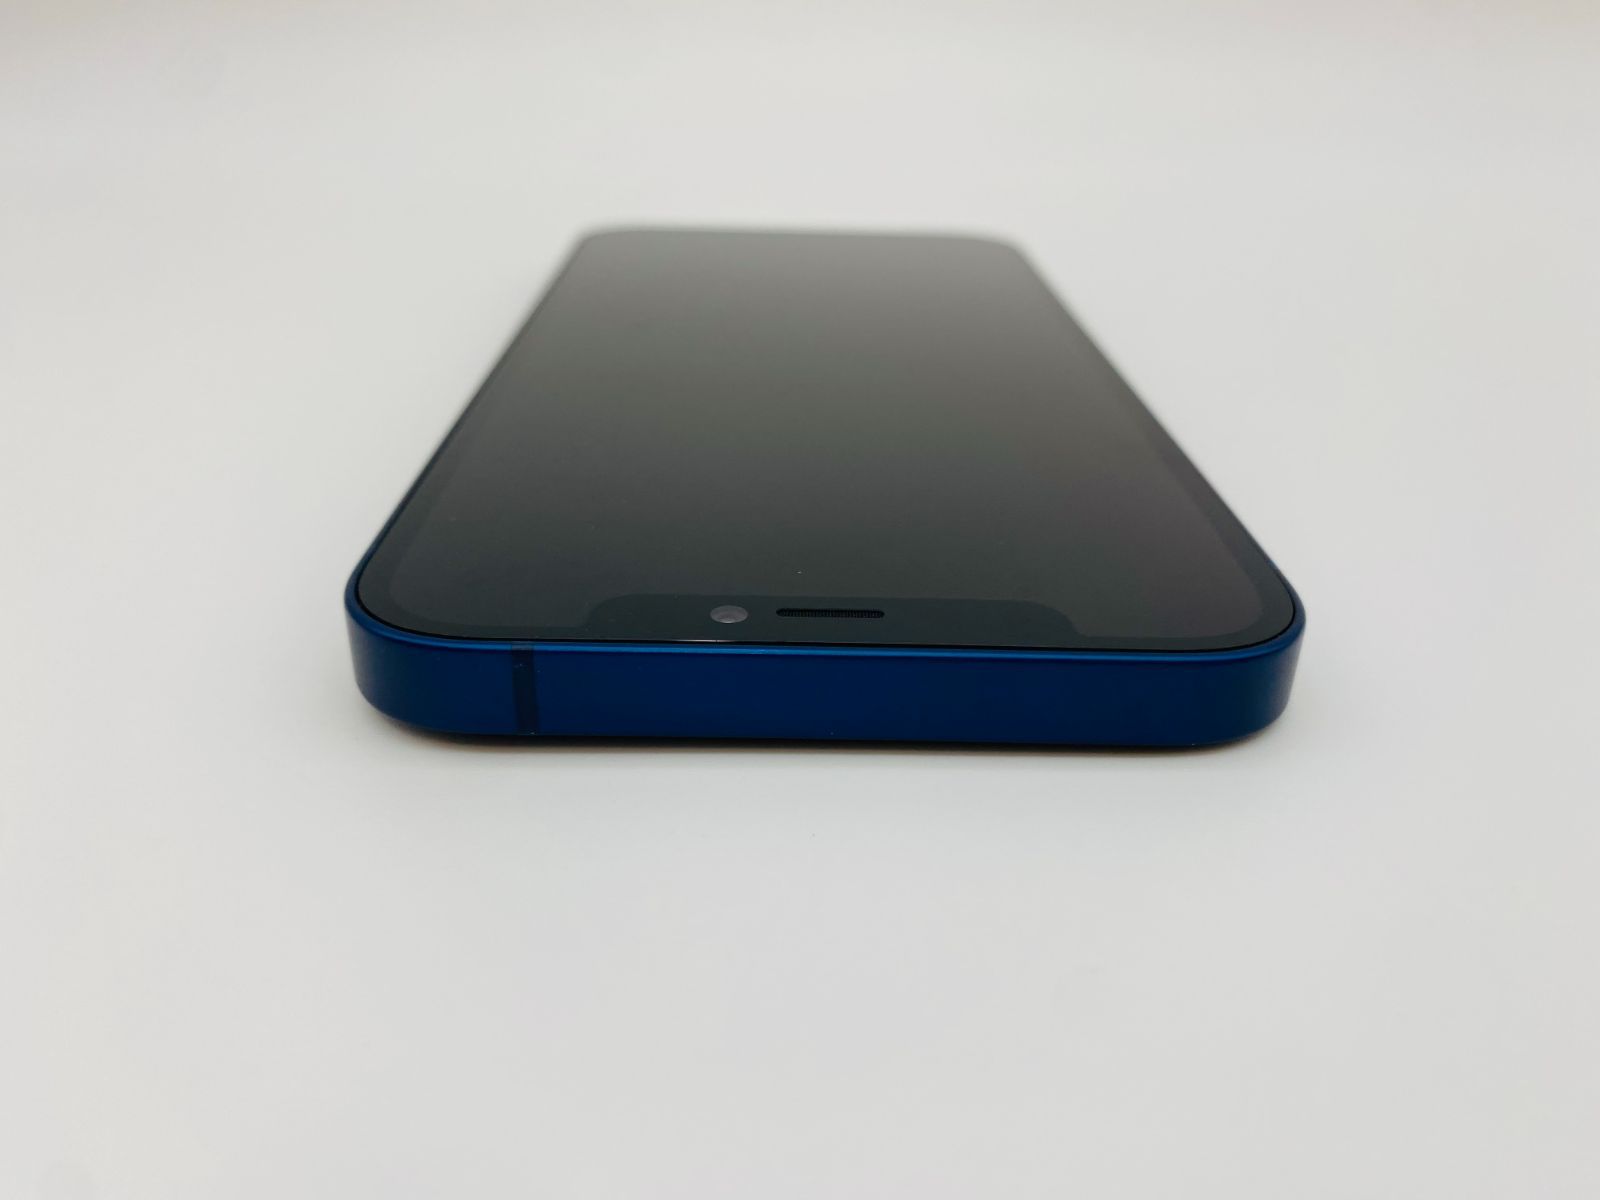 iPhone12 64GB ブルー/シムフリー/純正バッテリー100%/極薄ケース 